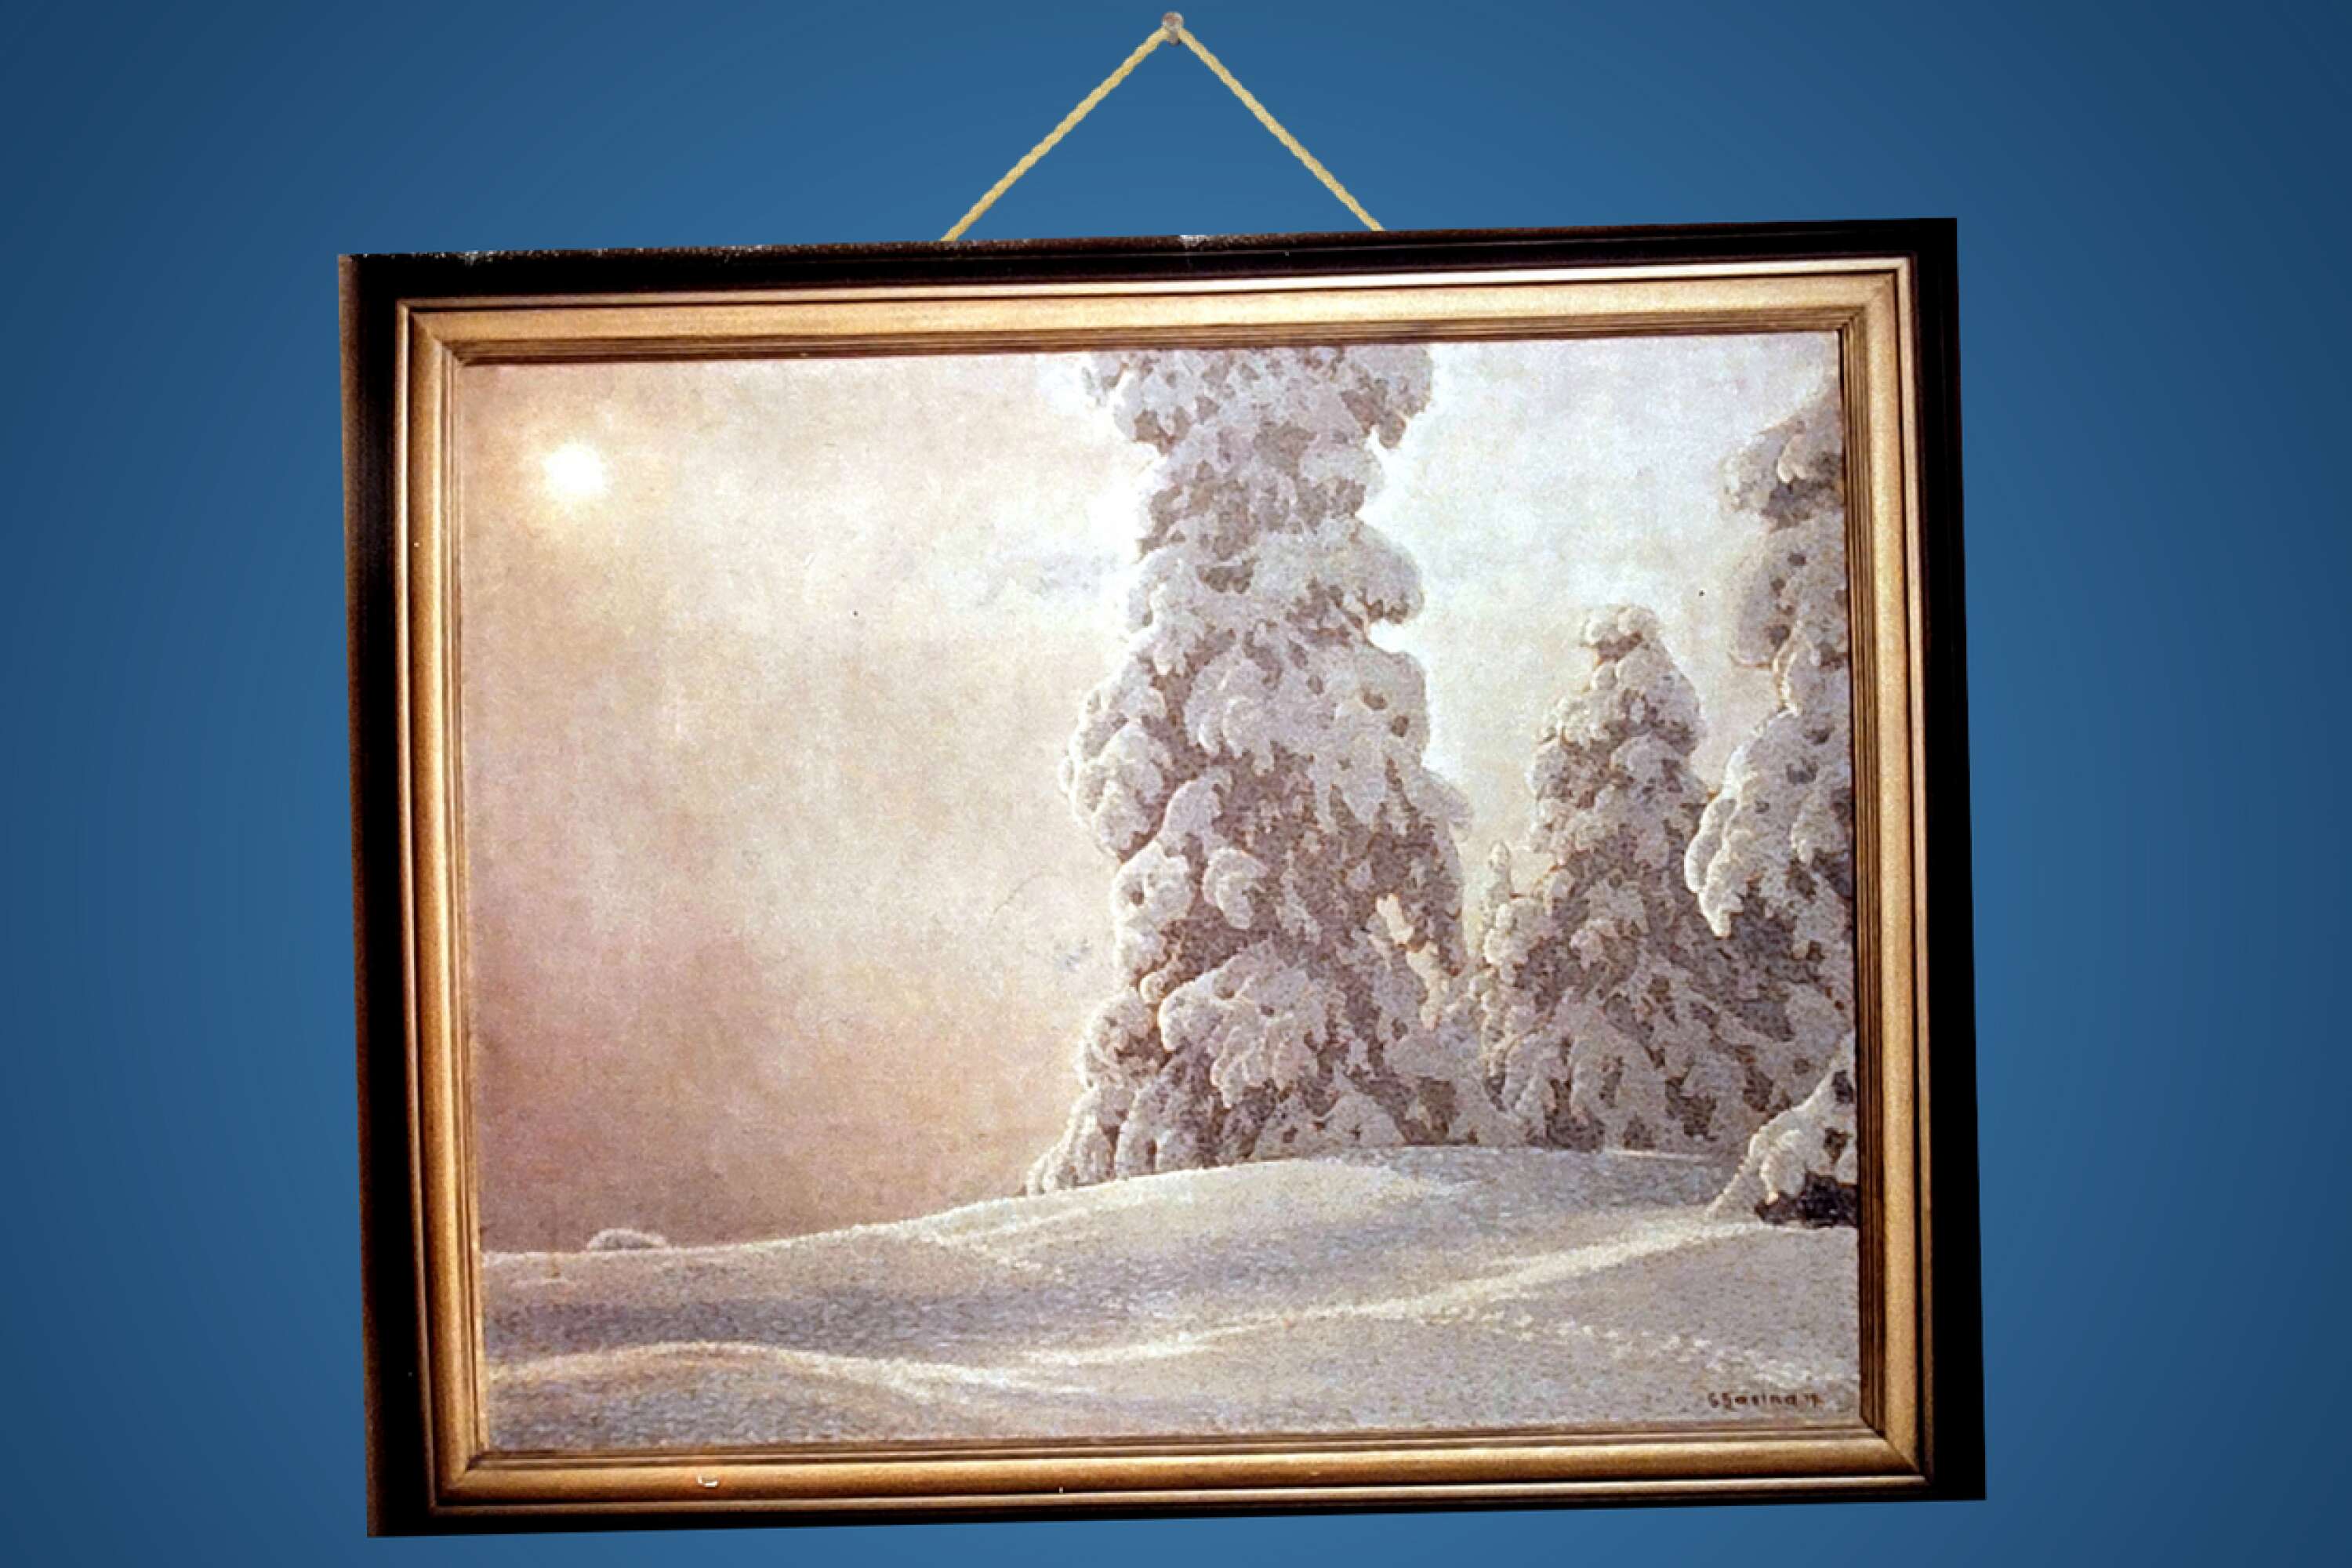 Den här vintermålningen av Gustaf Fjaestad var värderad till 550 000 kronor när den stals 1991. Den har varit försvunnen sedan dess. 